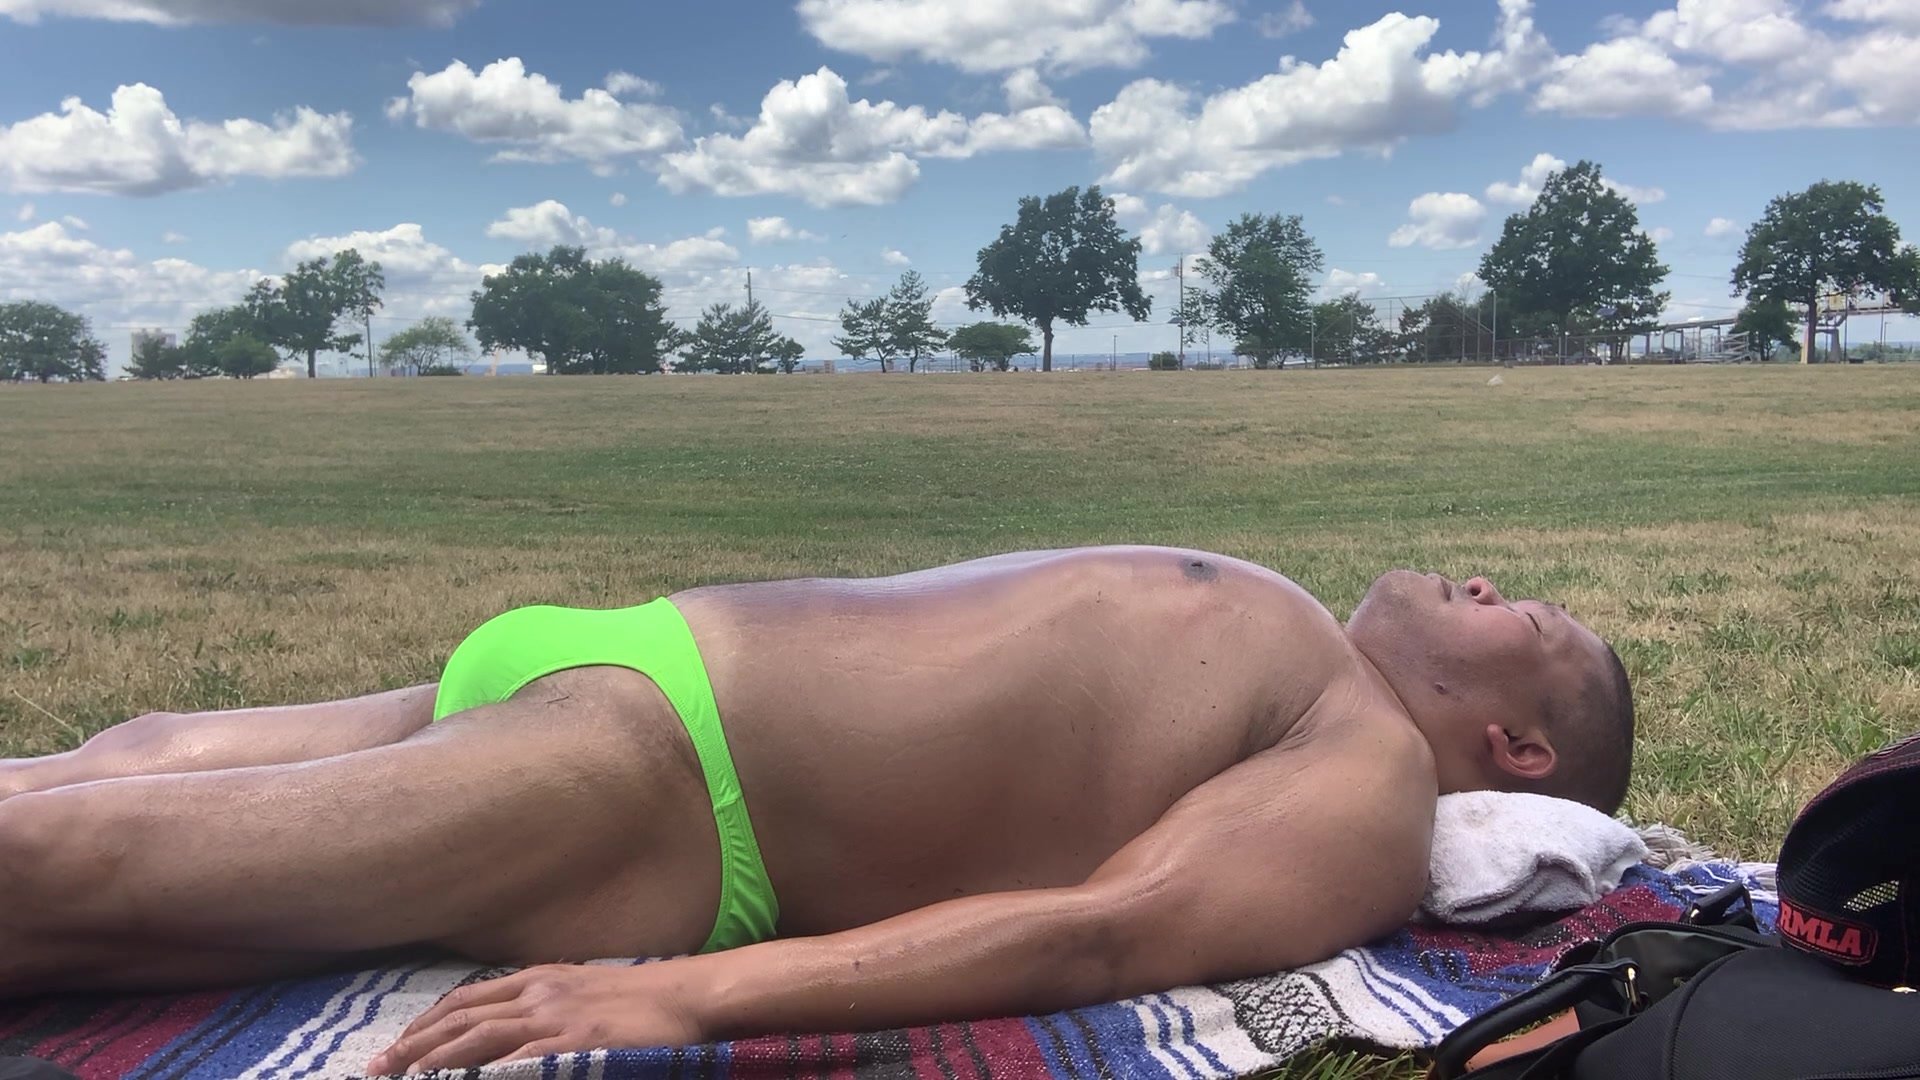 Sunbathing in green bikini